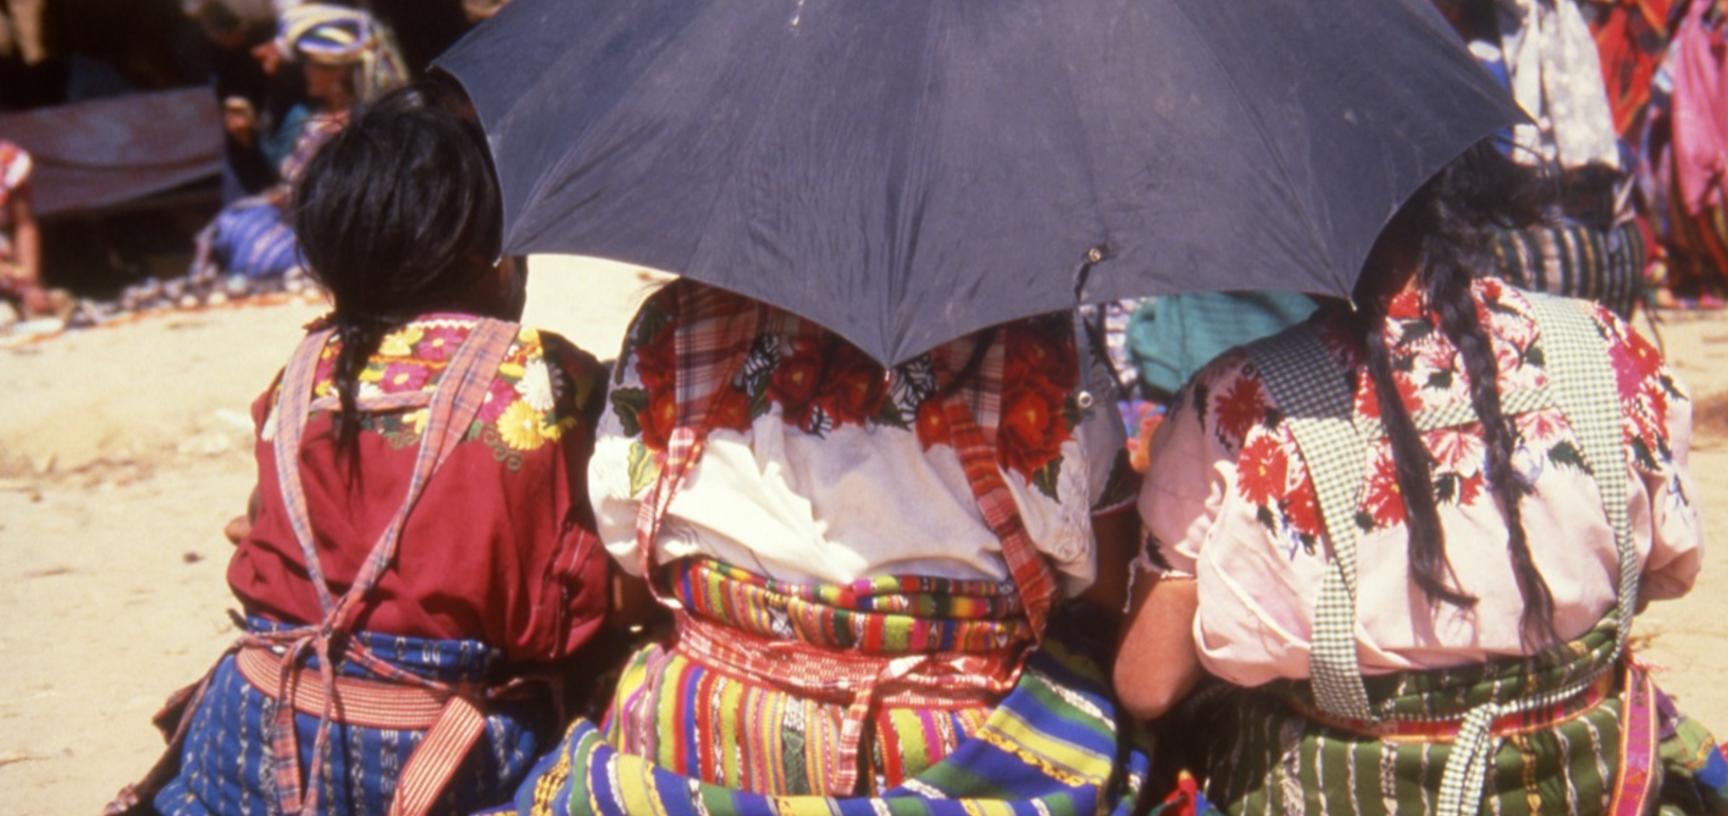 Girls at a market in Chichicastenango, Guatemala.